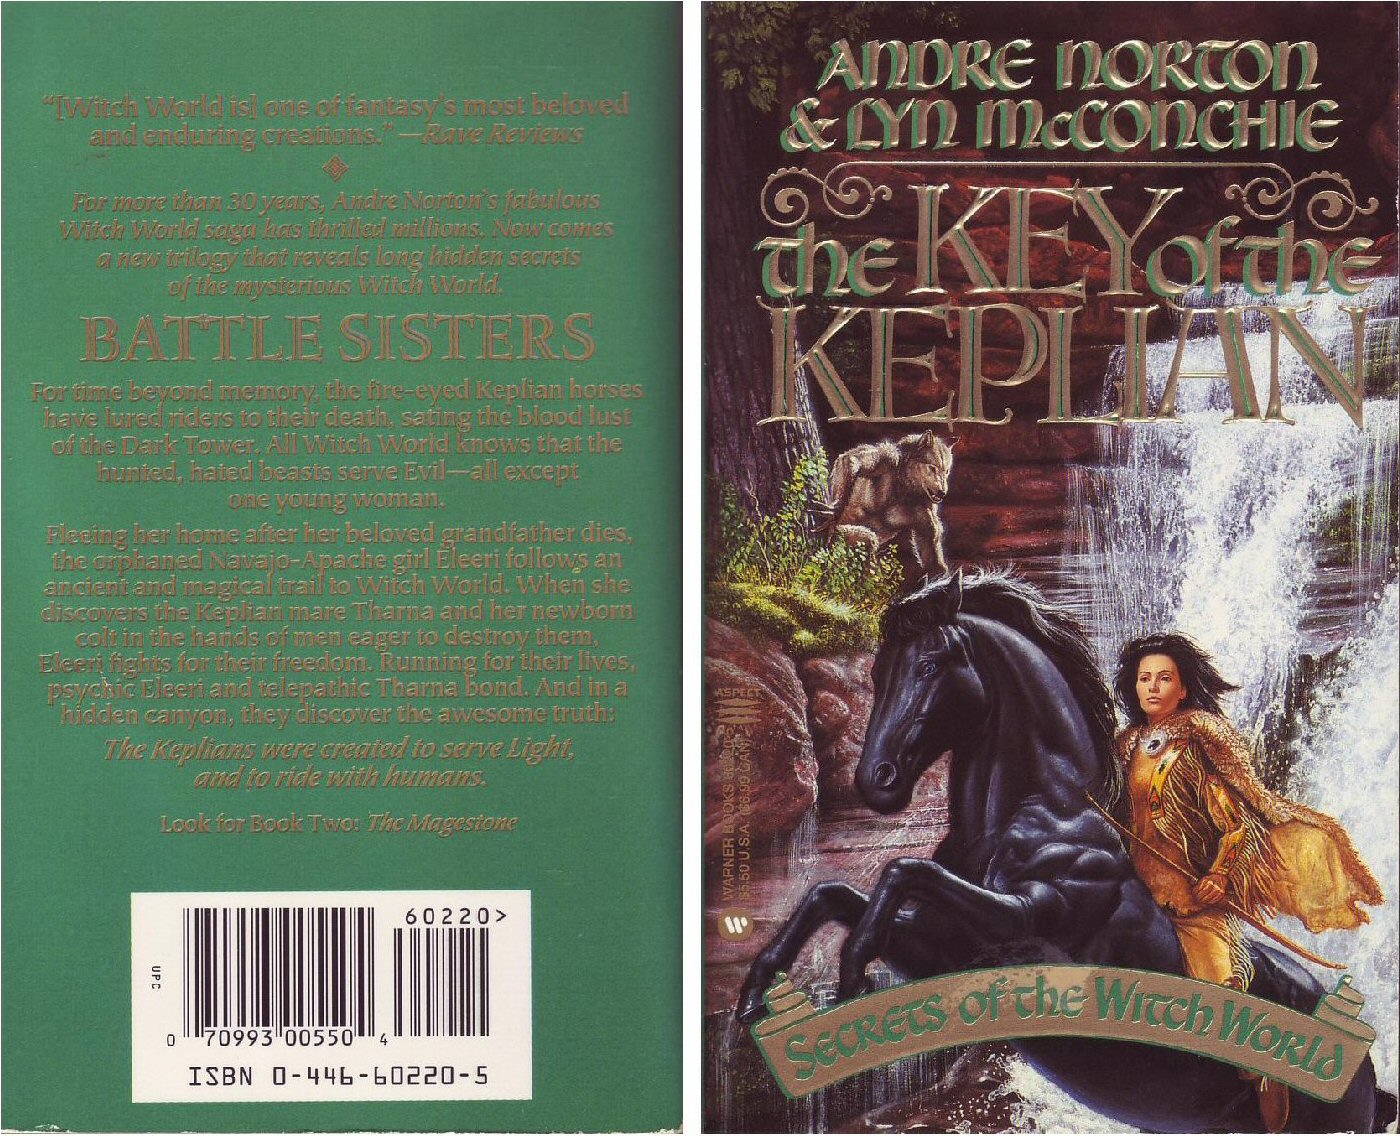 key of the keplian 1995 60220 5